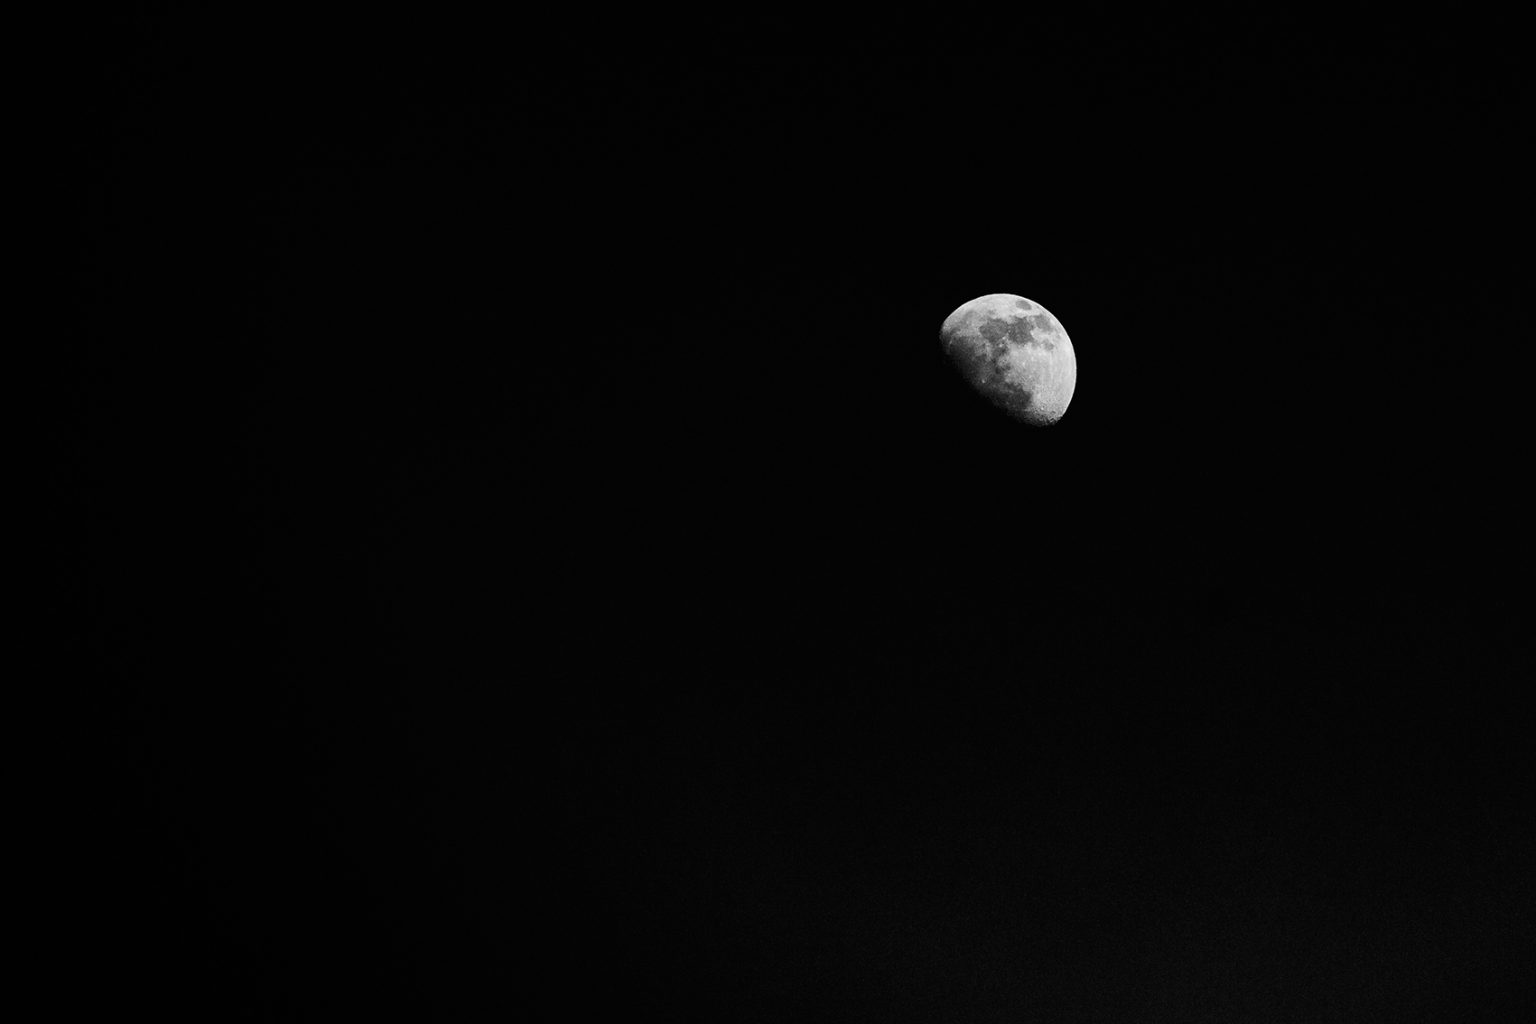 Lune très contrastée la nuit en noir et blanc photo avec un trépied par muriel joly photographe en gironde